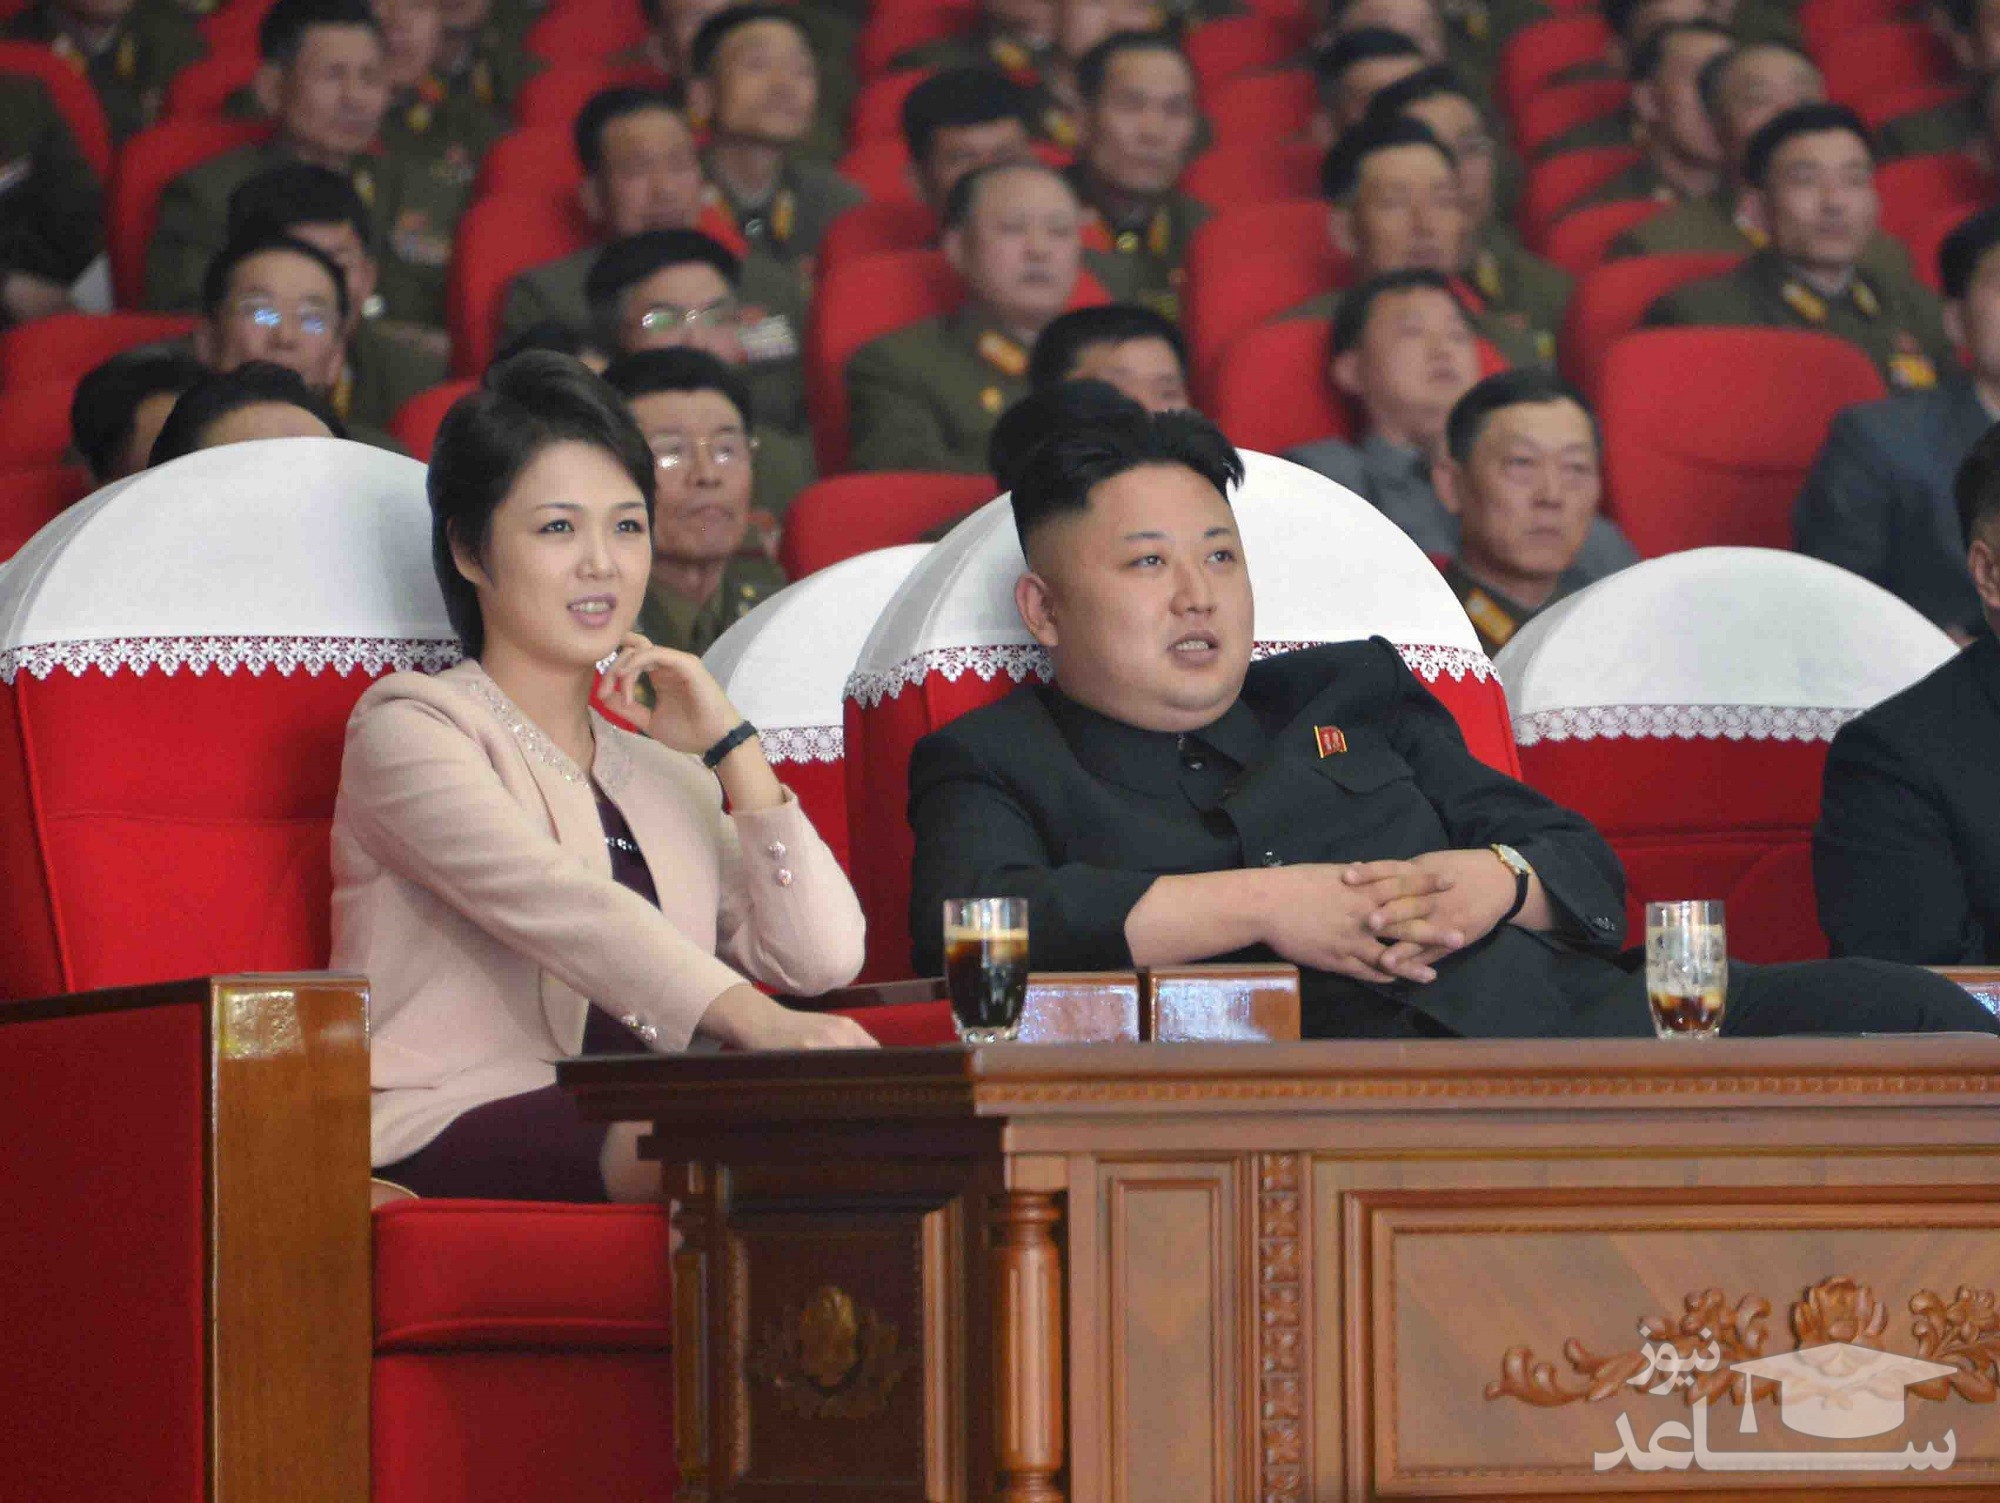 حقایقی جالب و خواندنی درباره ی همسر رهبر کره شمالی